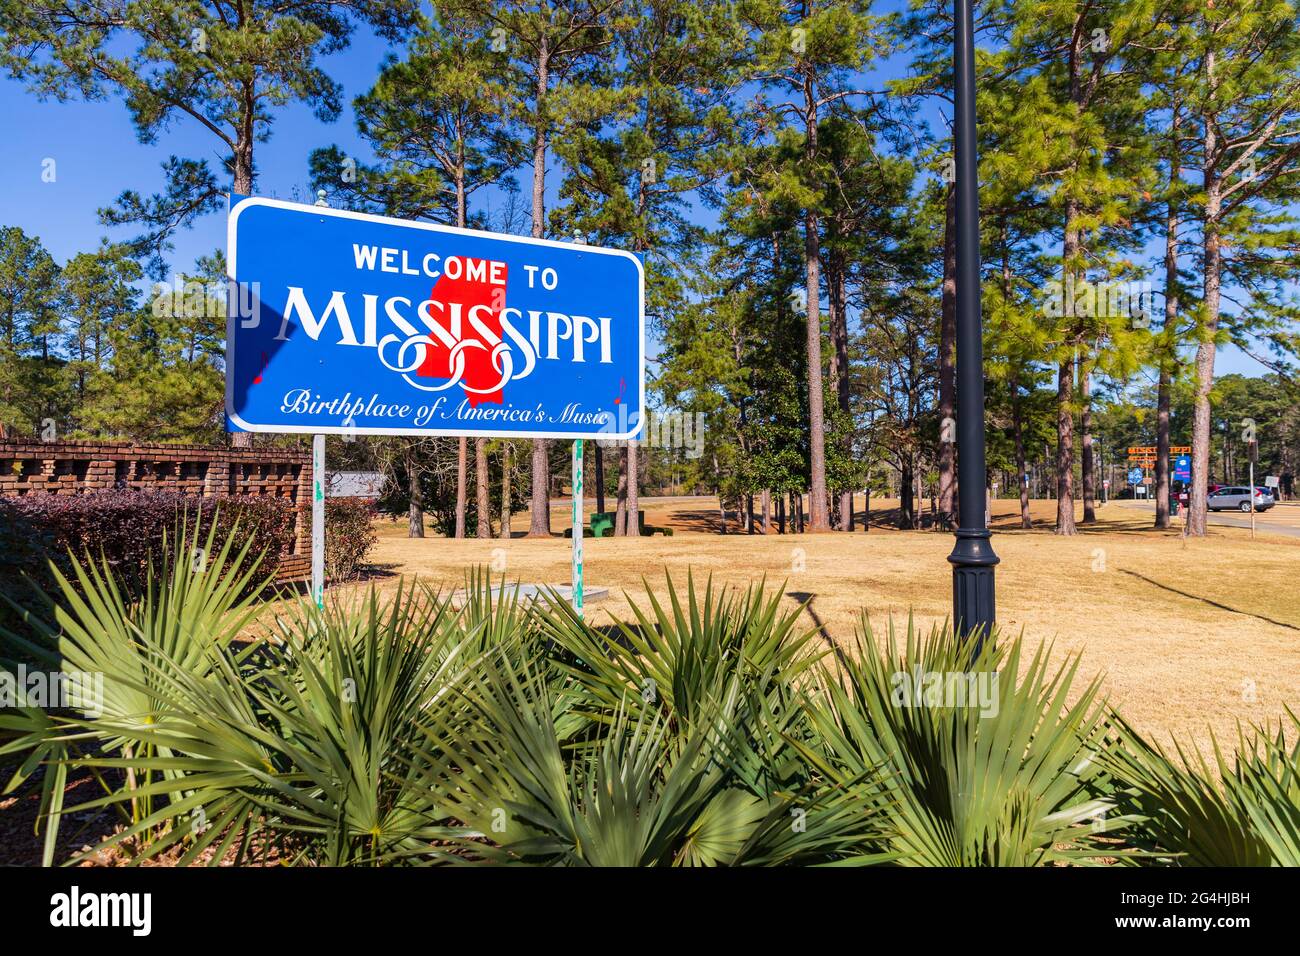 Magnolia, MS - 14 janvier 2021: Bienvenue au Mississippi Sign, lieu de naissance de la musique de l'Amérique Banque D'Images